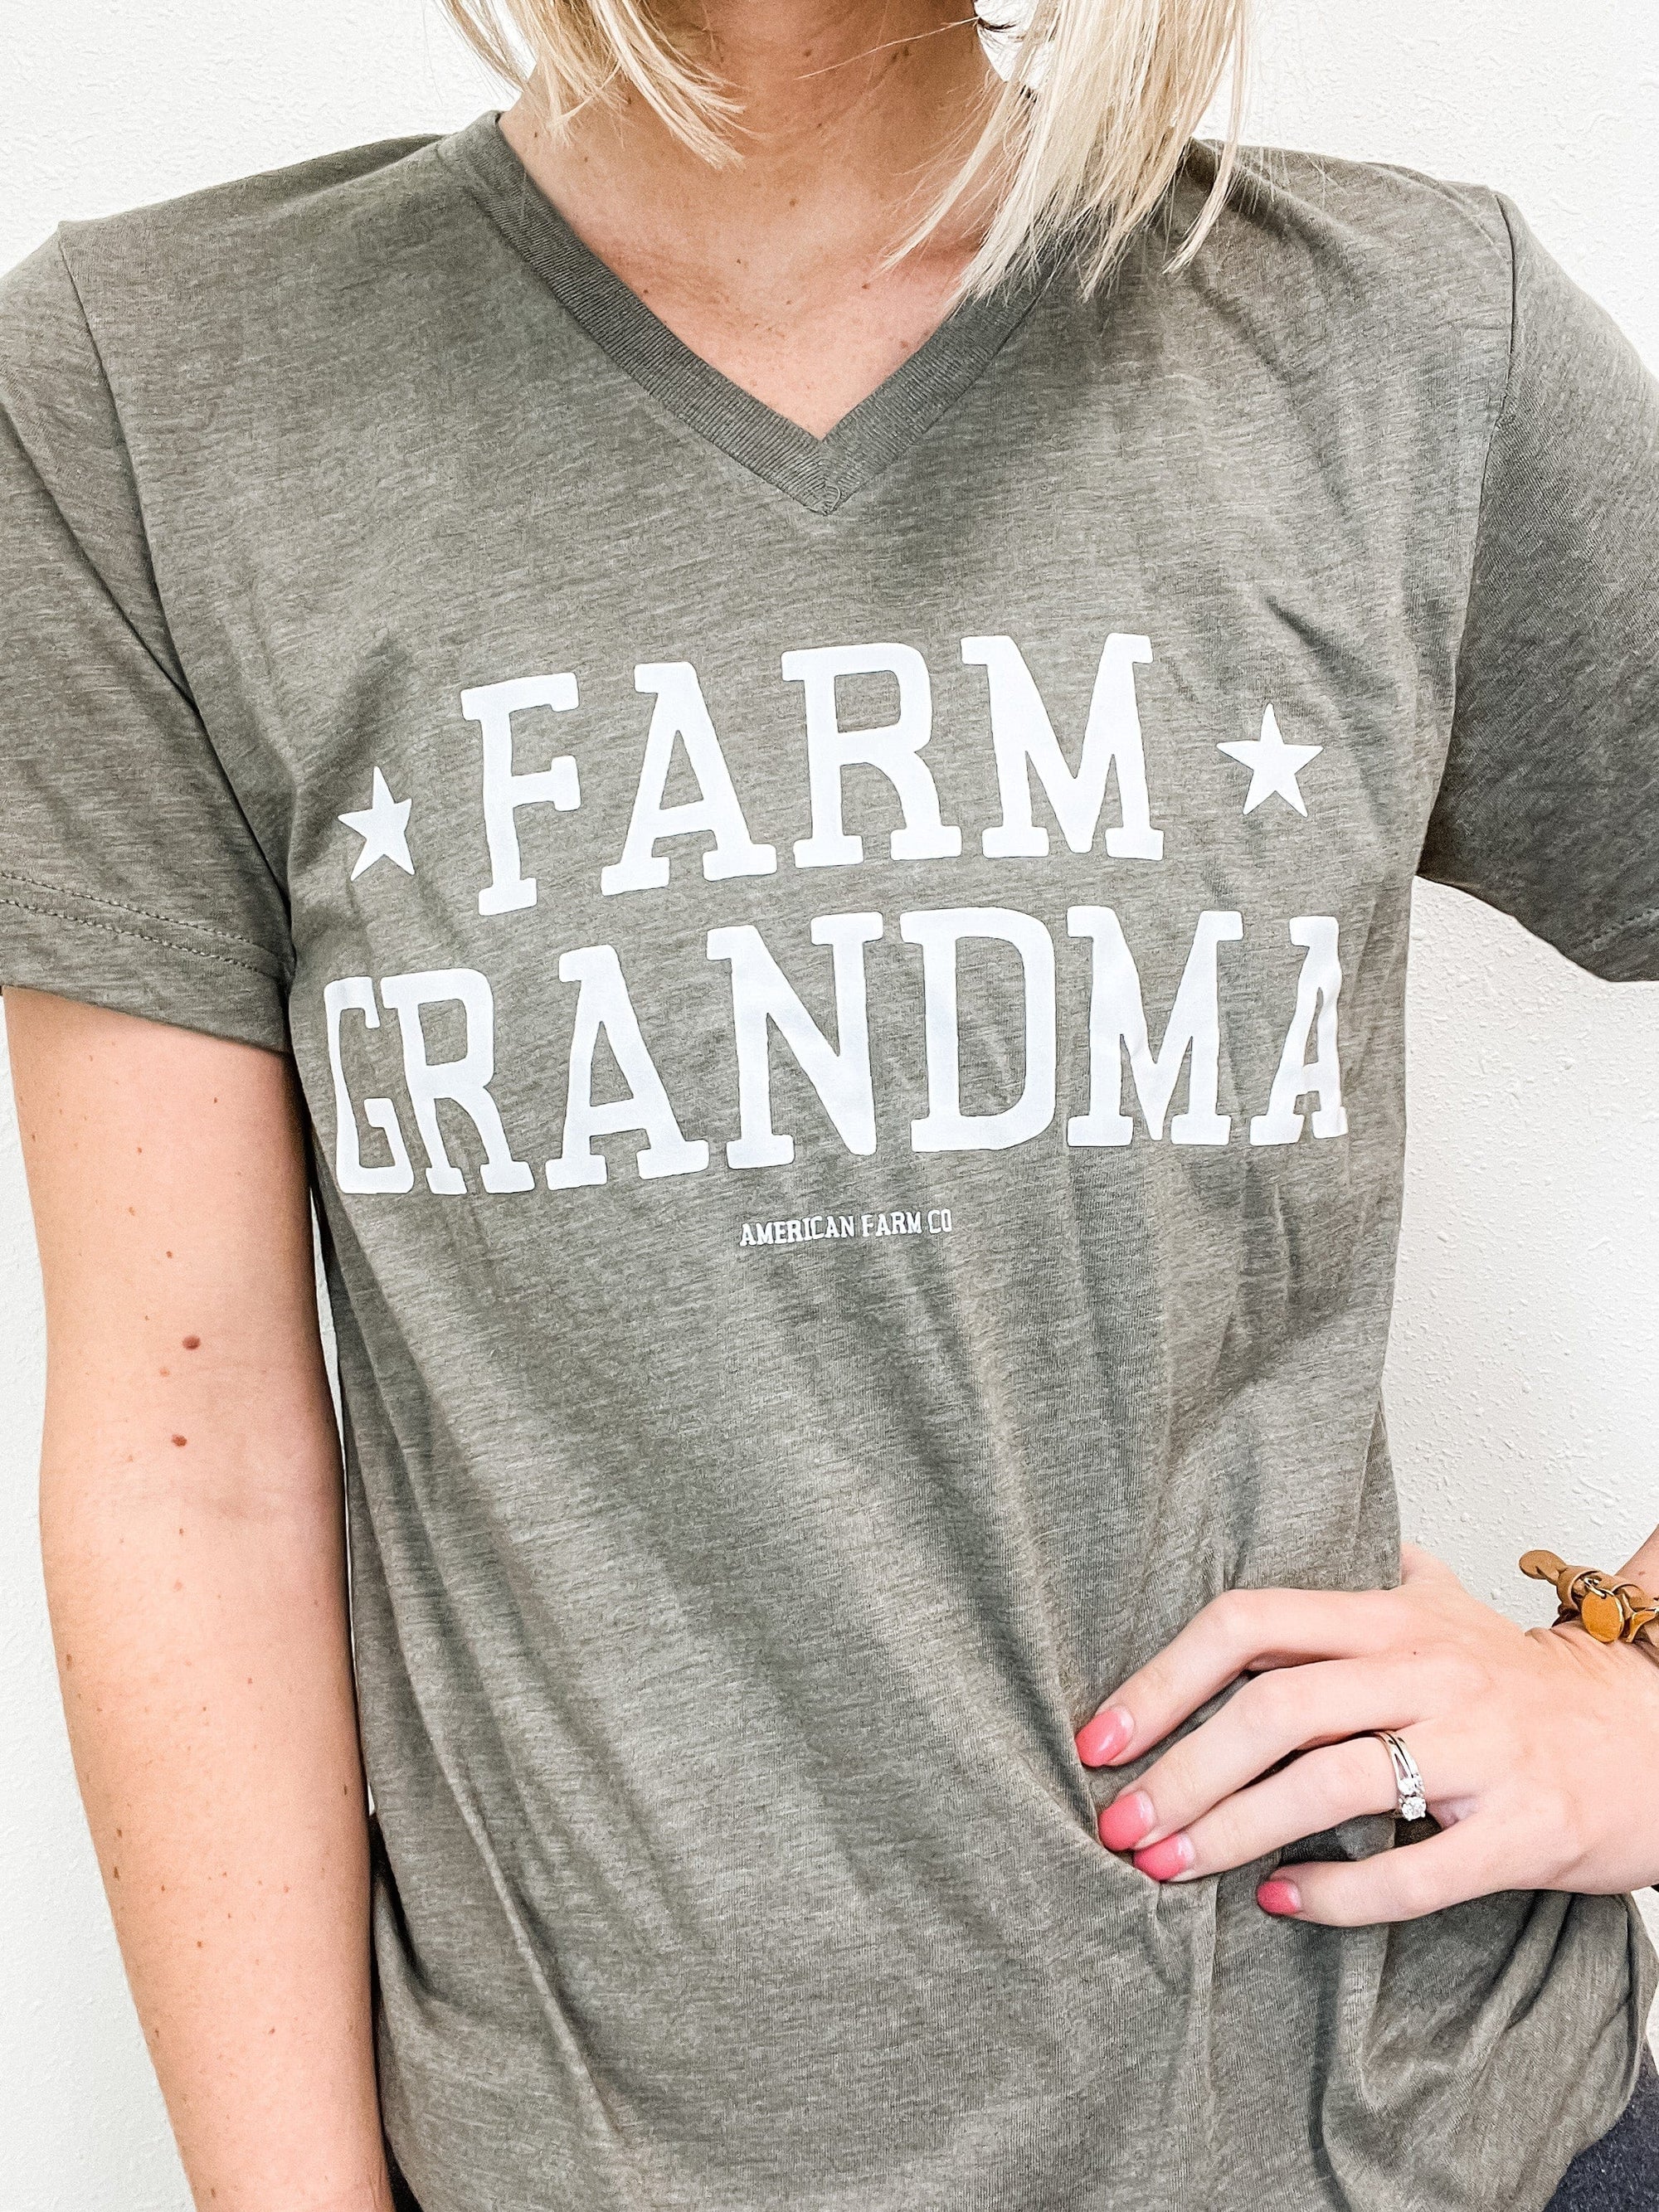 American Farm Company Shirts 'Farm Grandma' V- Neck Tee